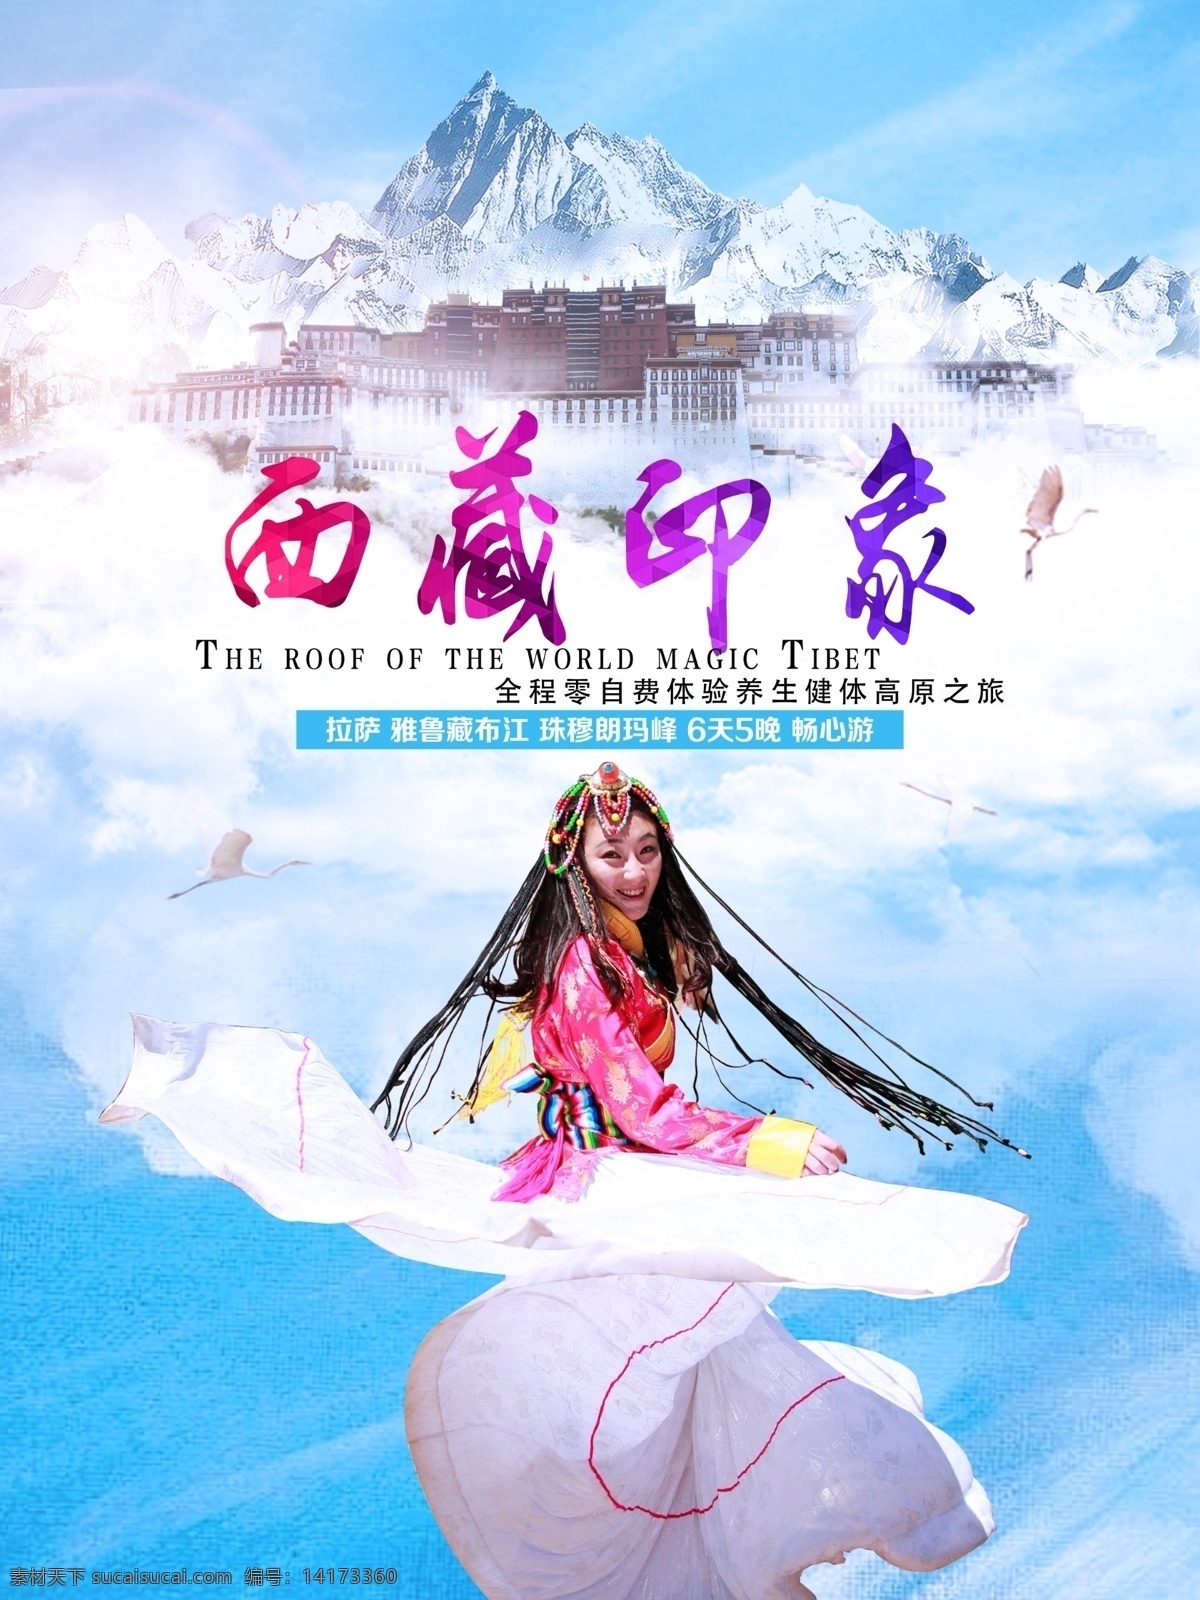 西藏 印象 游 旅游 宣传 广告 藏南 藏族 布达拉宫 高原 珠穆朗玛峰 西藏印象 西藏旅游 旅行 自驾游 海报